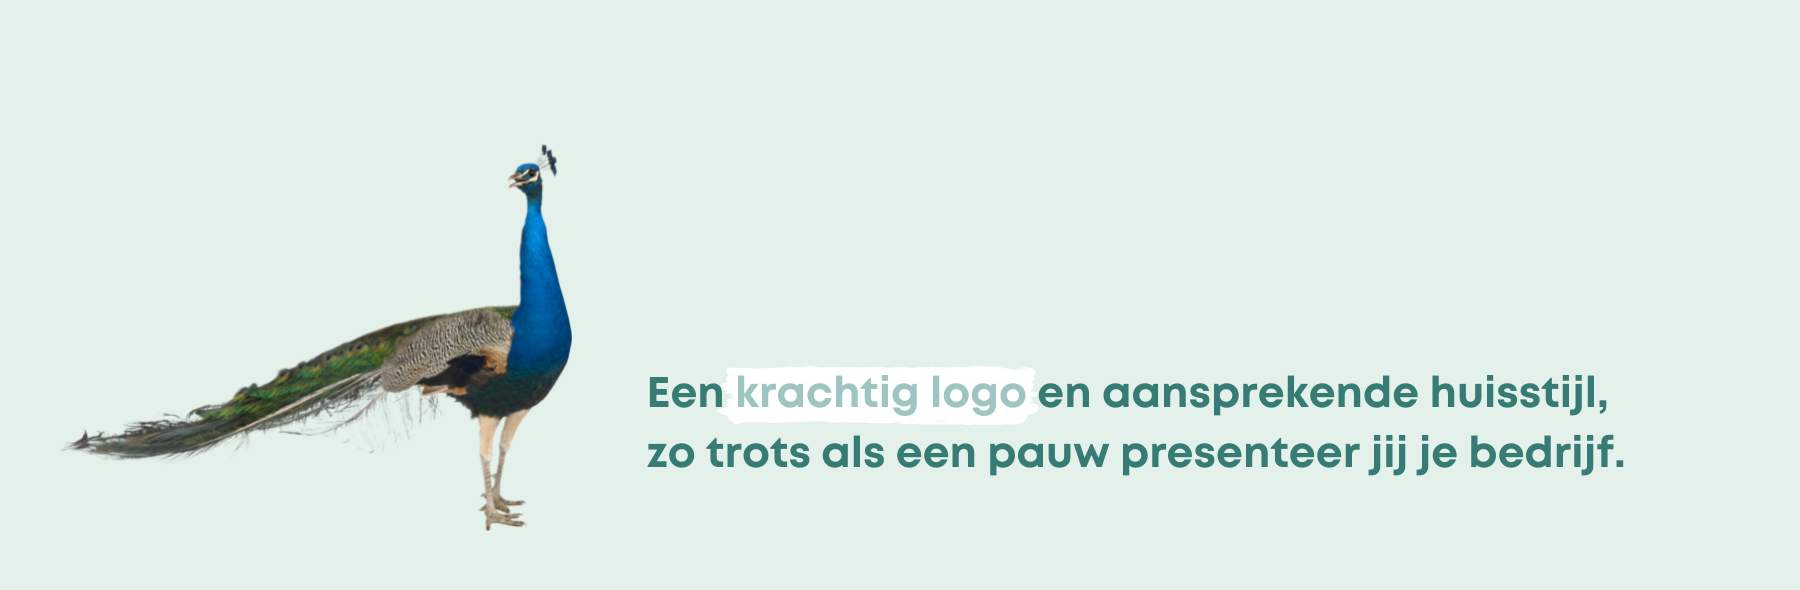 Online marketing - Design Domein Reeuwijk